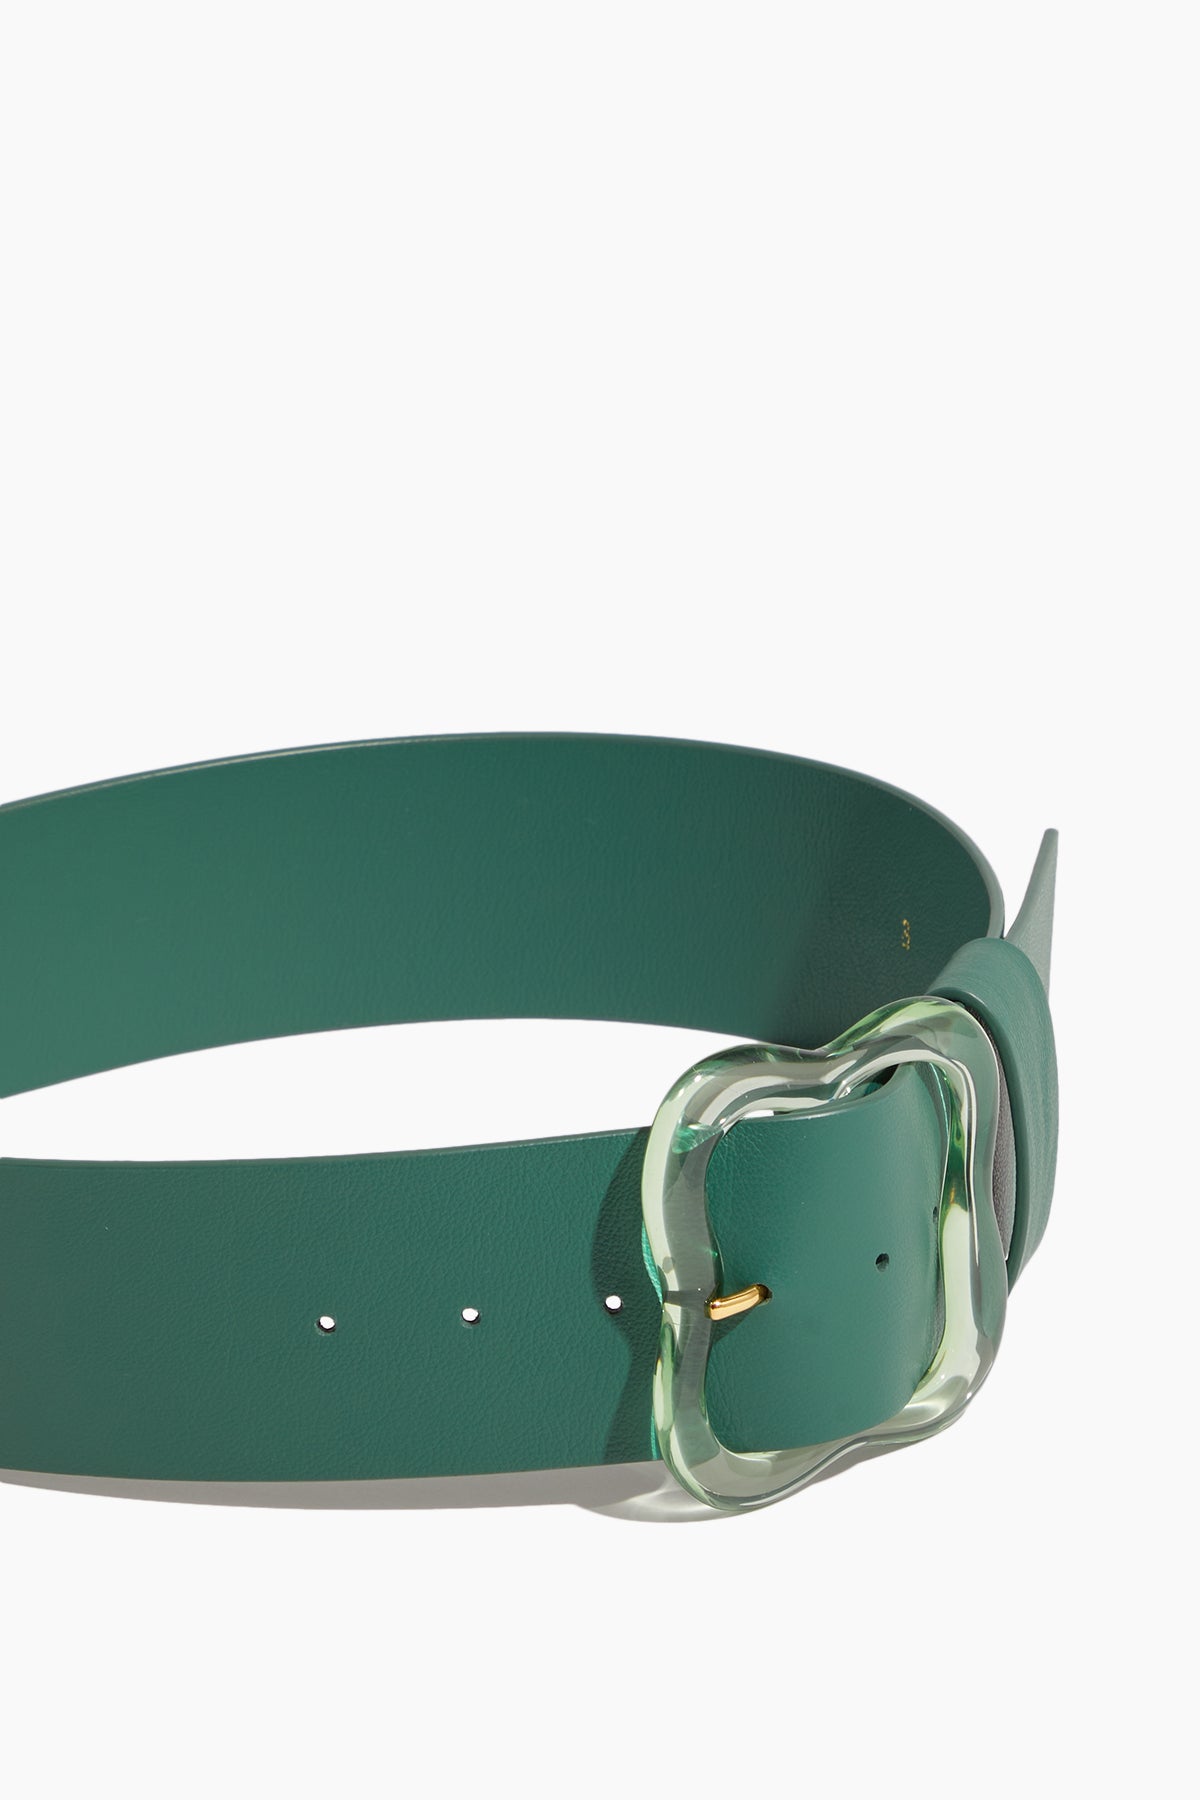 Lizzie Fortunato Belts Florence Belt in Dark Green Emerald Lizzie Fortunato Florence Belt in Dark Green Emerald